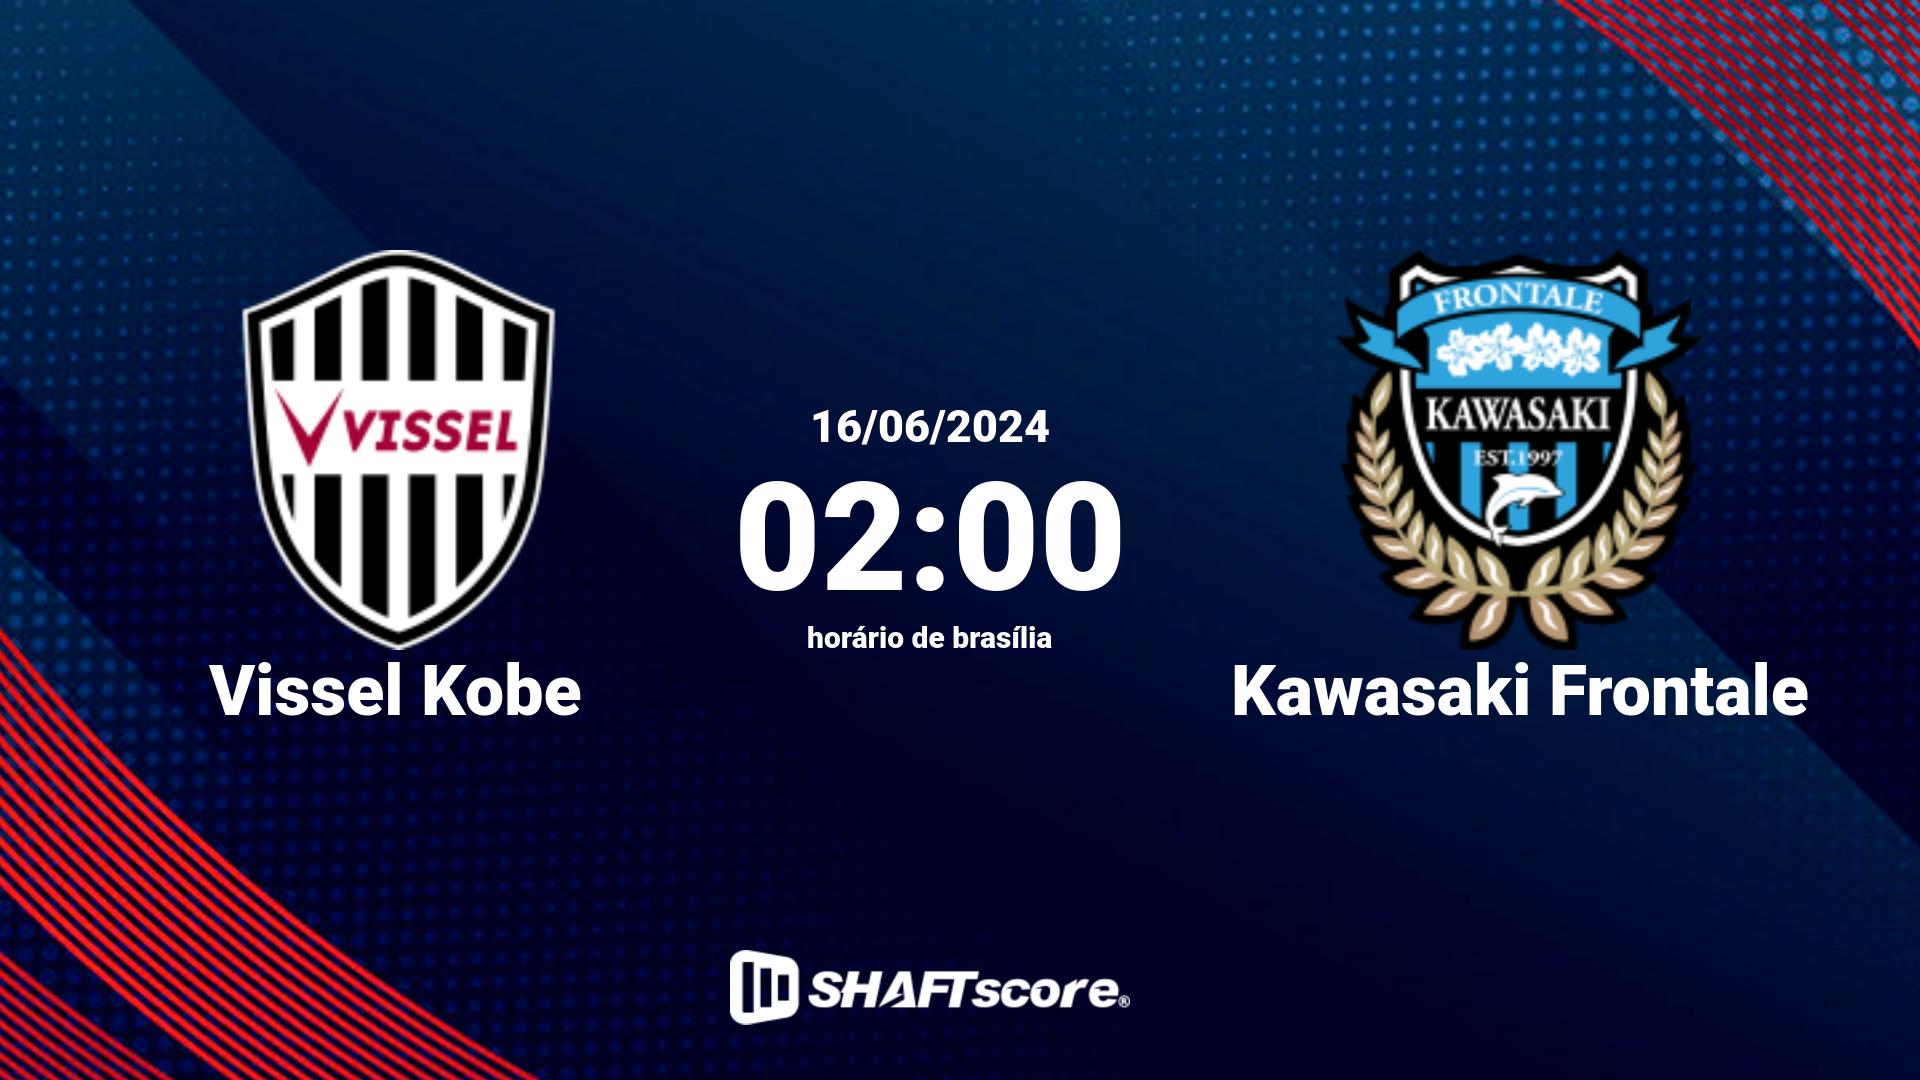 Estatísticas do jogo Vissel Kobe vs Kawasaki Frontale 16.06 02:00